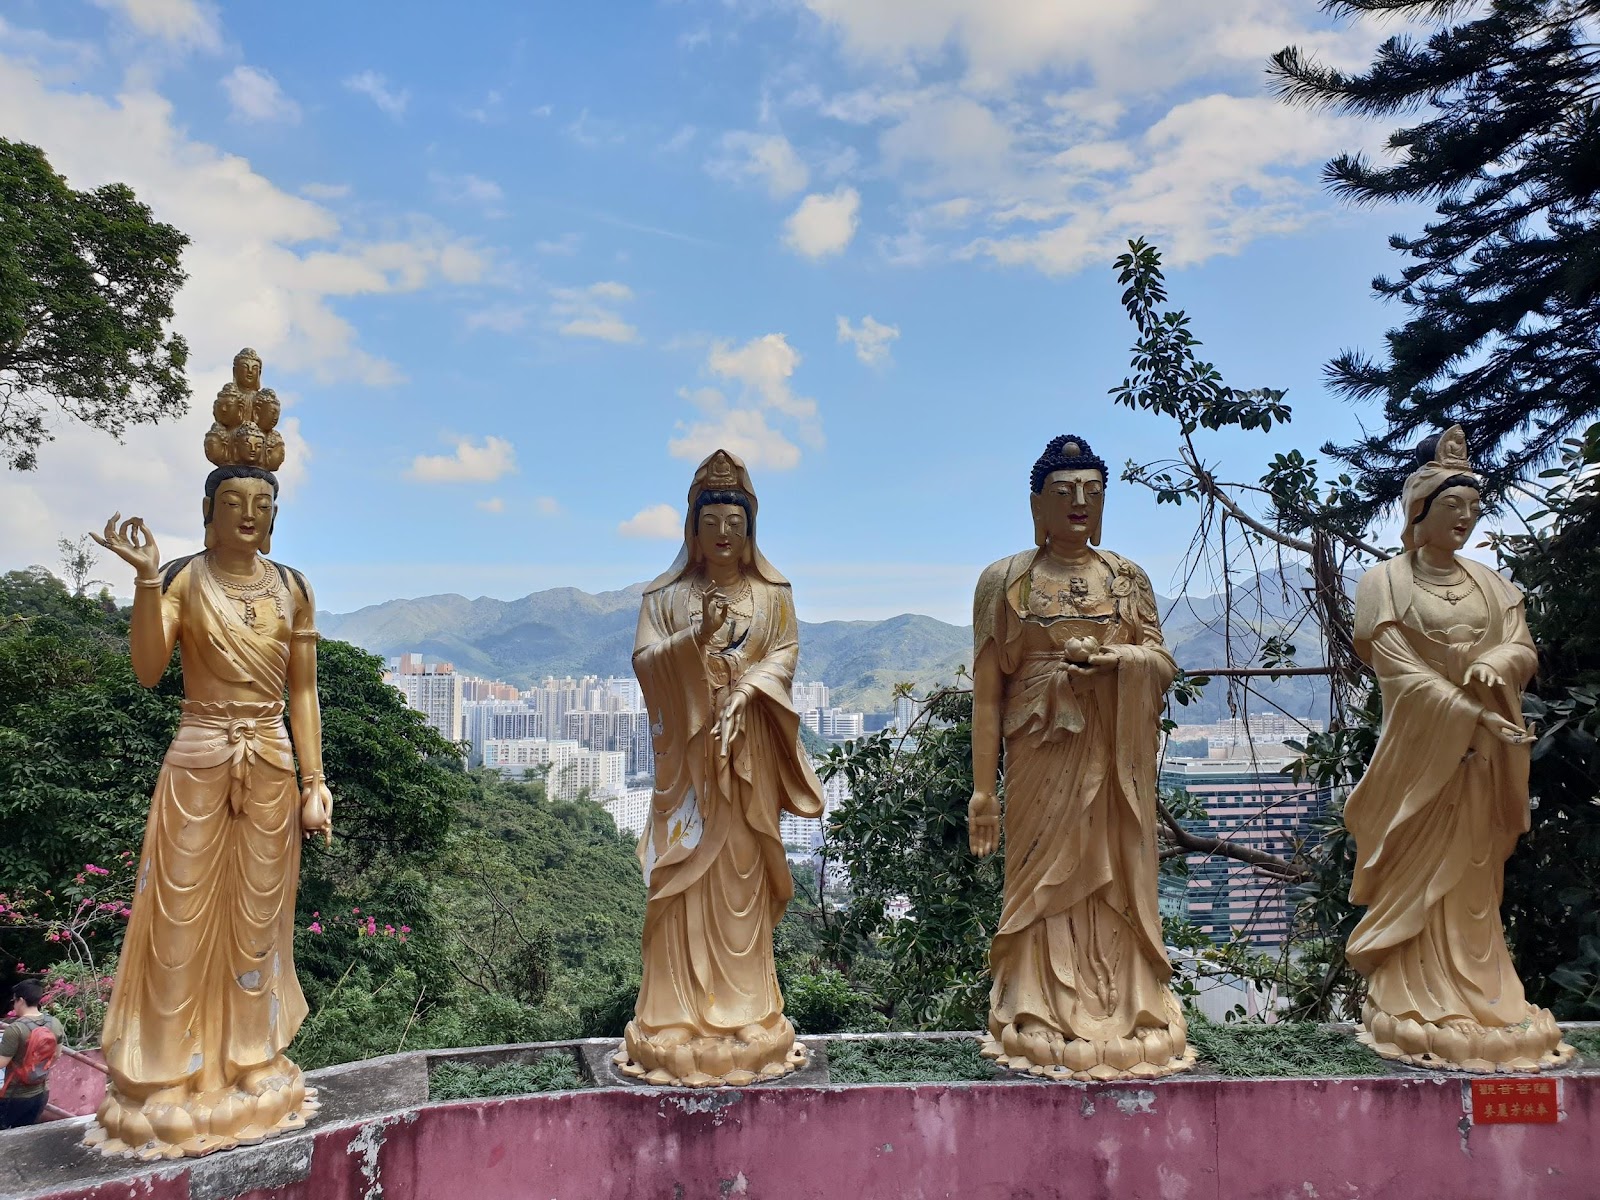 golden buddha statues